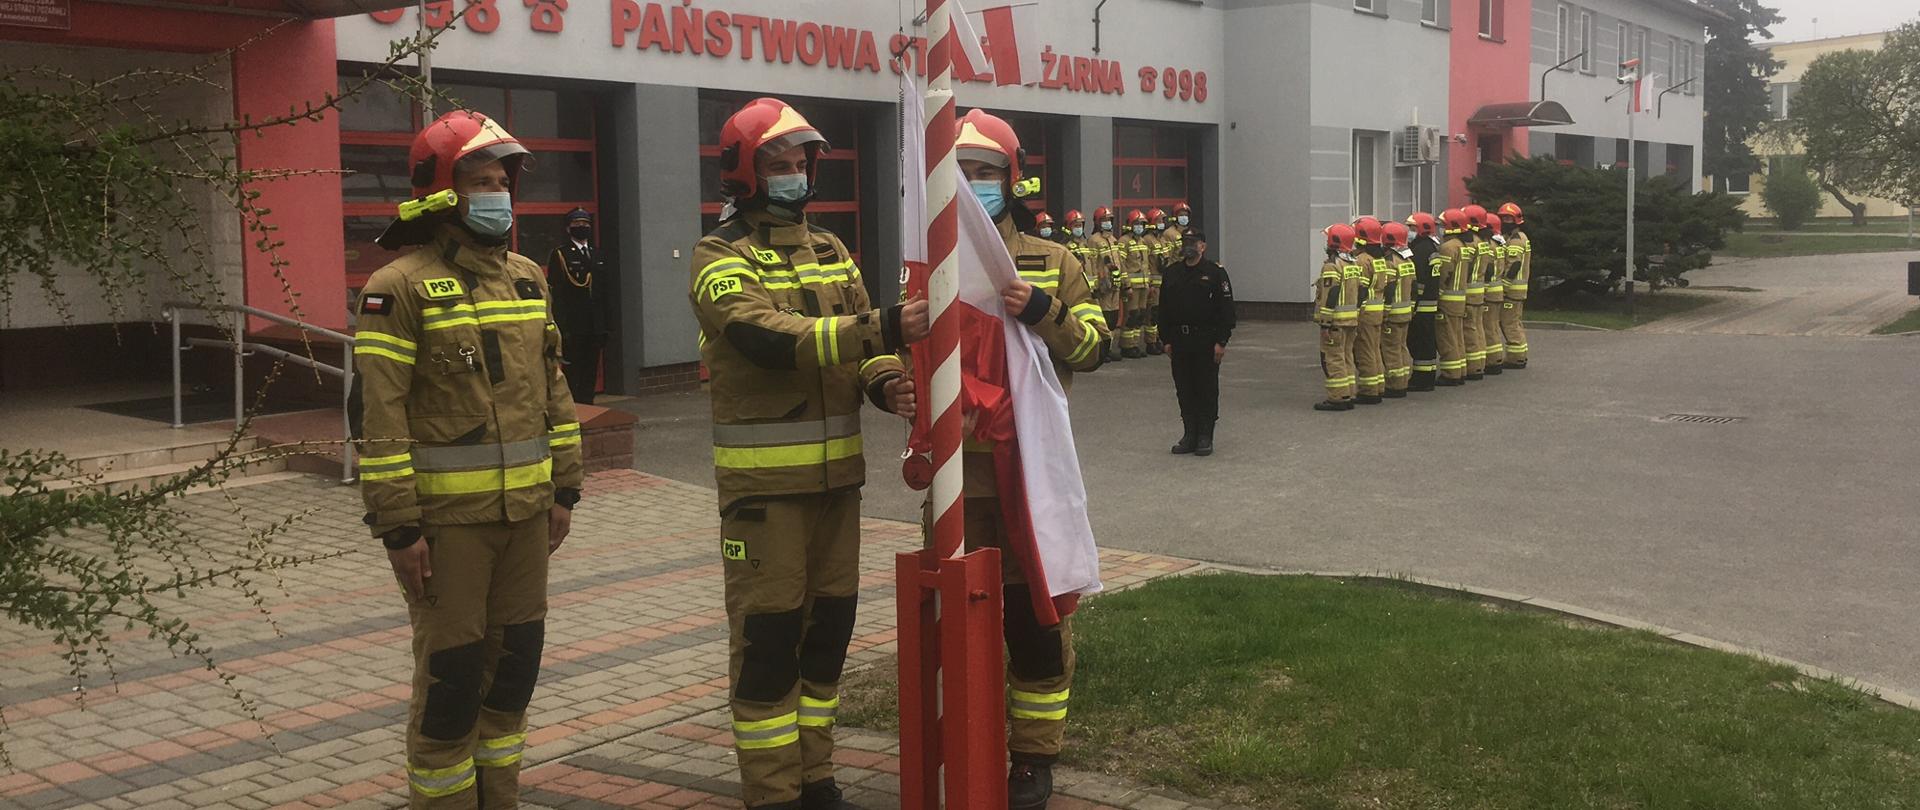 Trzech strażaków w umundurowaniu bojowym stoi przed masztem, jeden z nich zapina flagę. Na drugim planie, przed budynkiem stoją strażacy, którzy są ustawieni w dwóch szeregach.